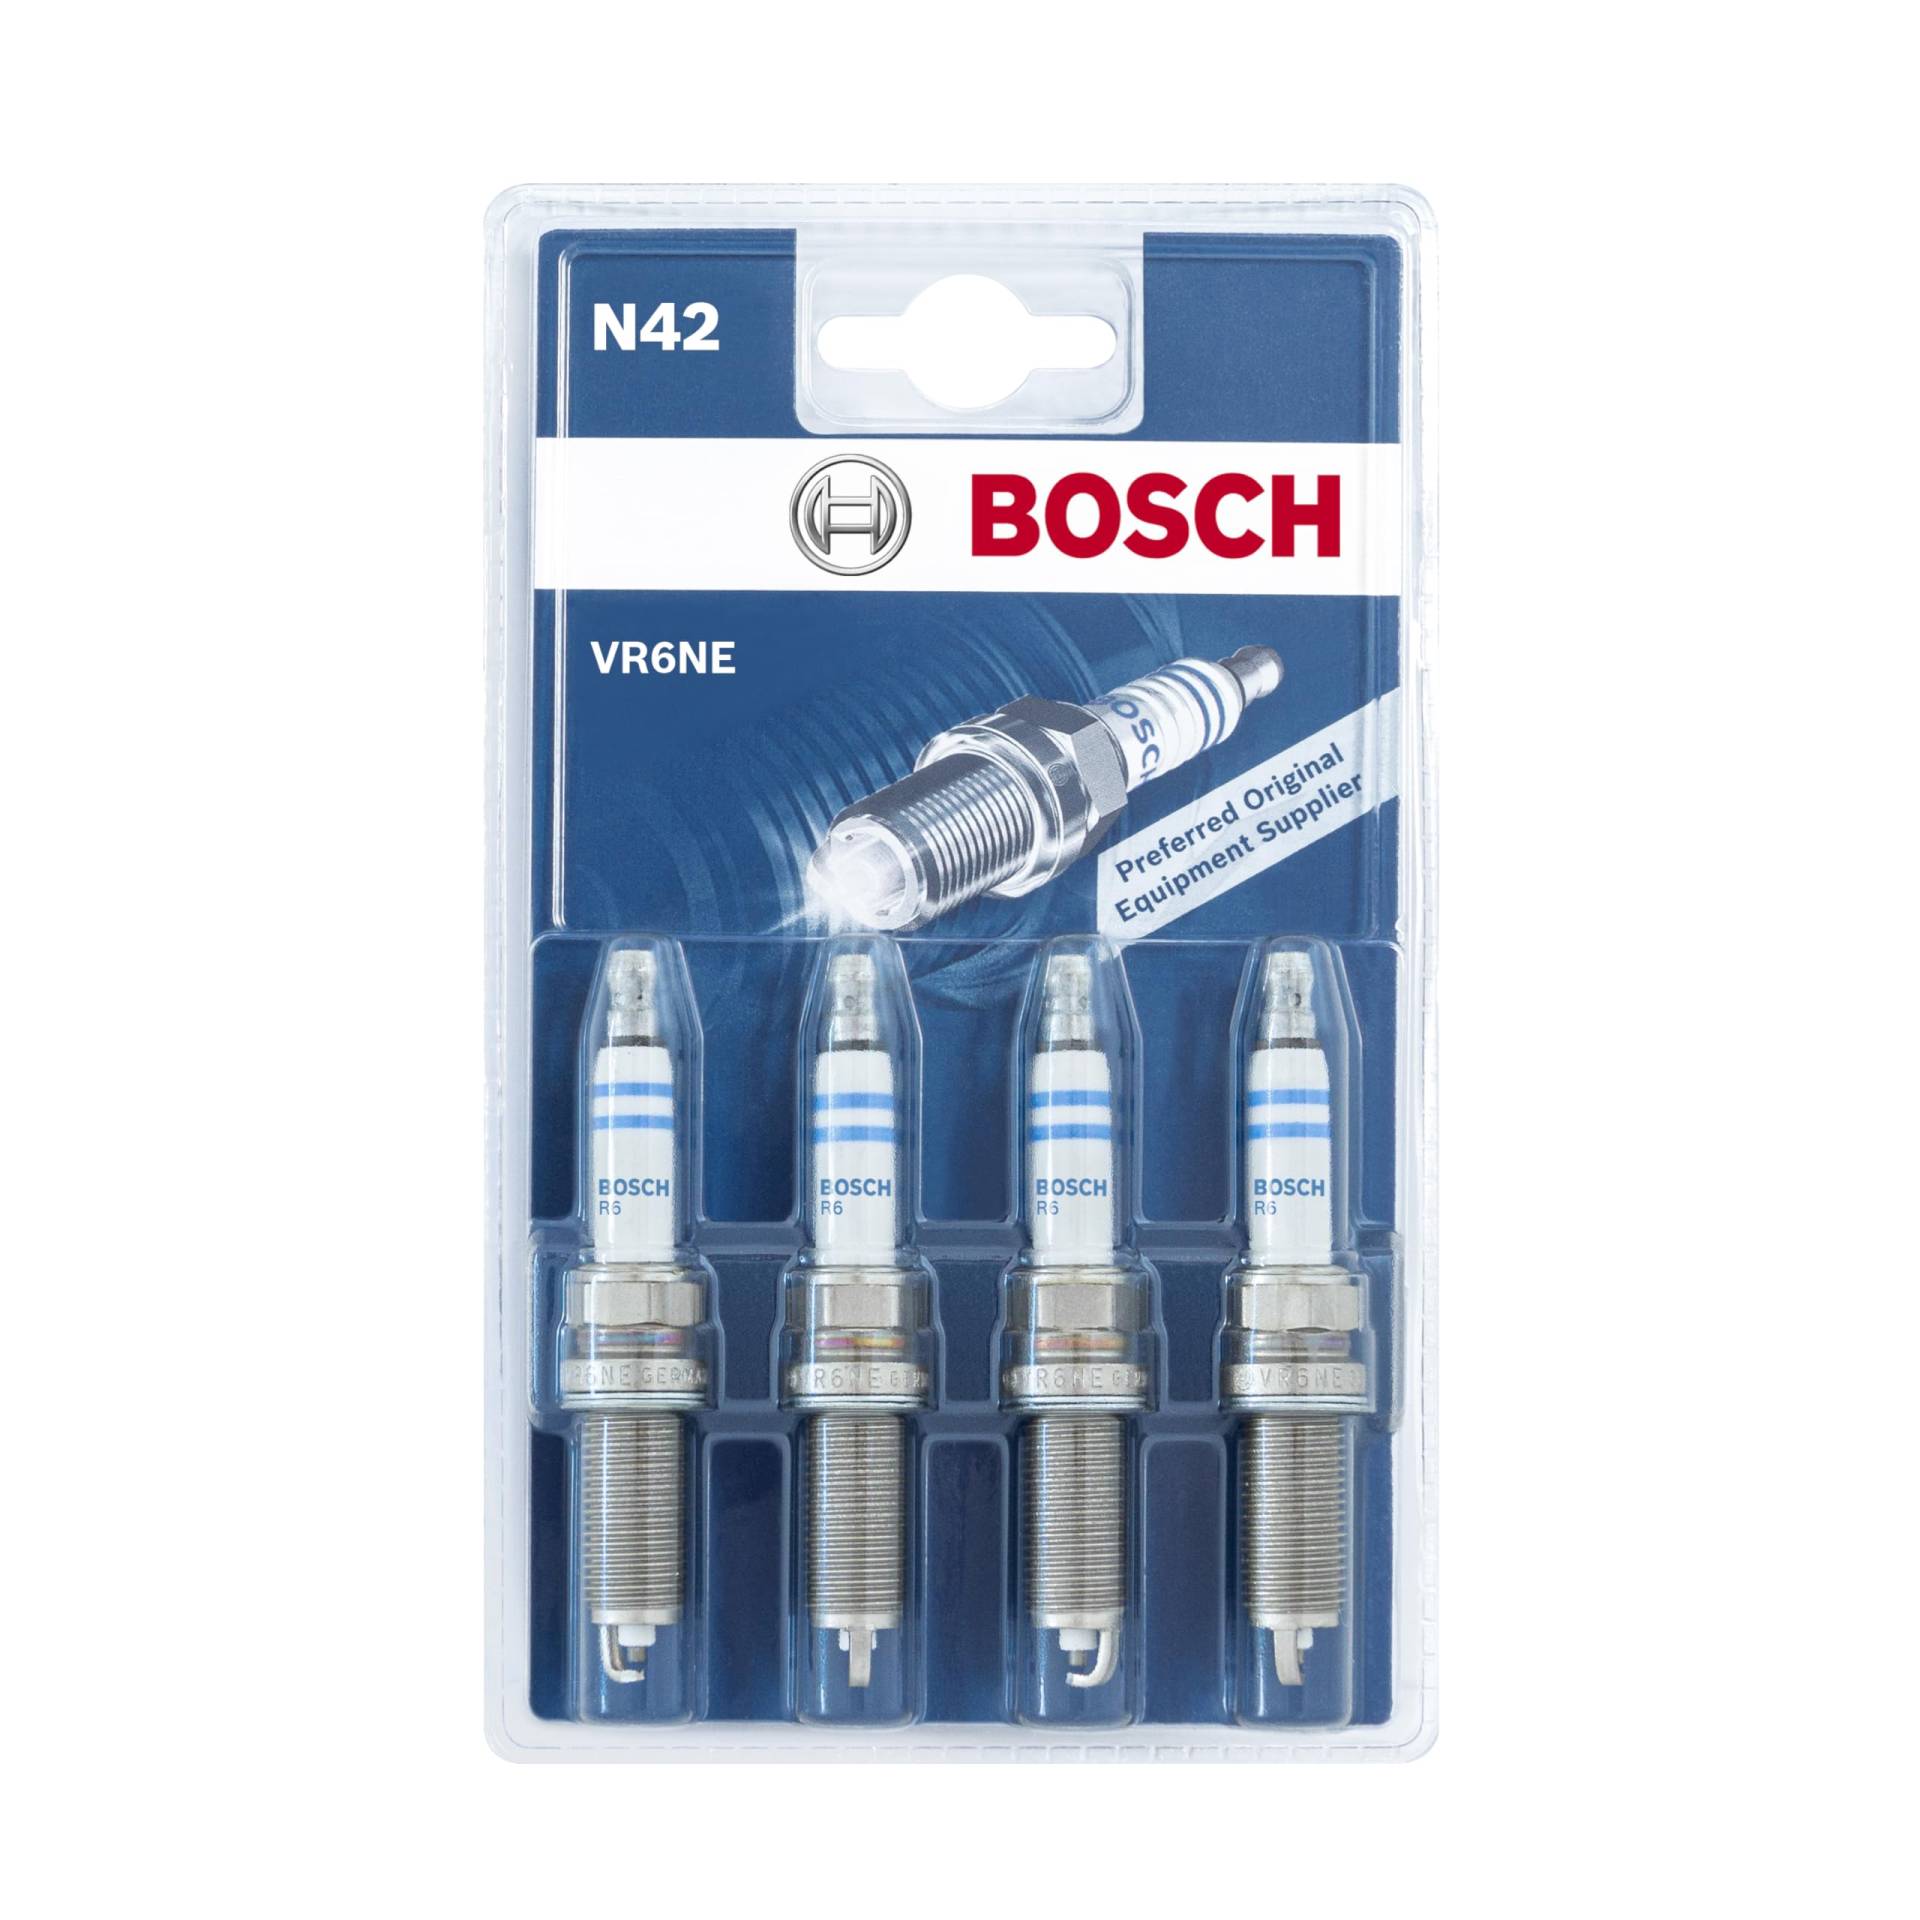 Bosch VR6NE (N42) - Nickel Zündkerzen - 4er Set von Bosch Automotive